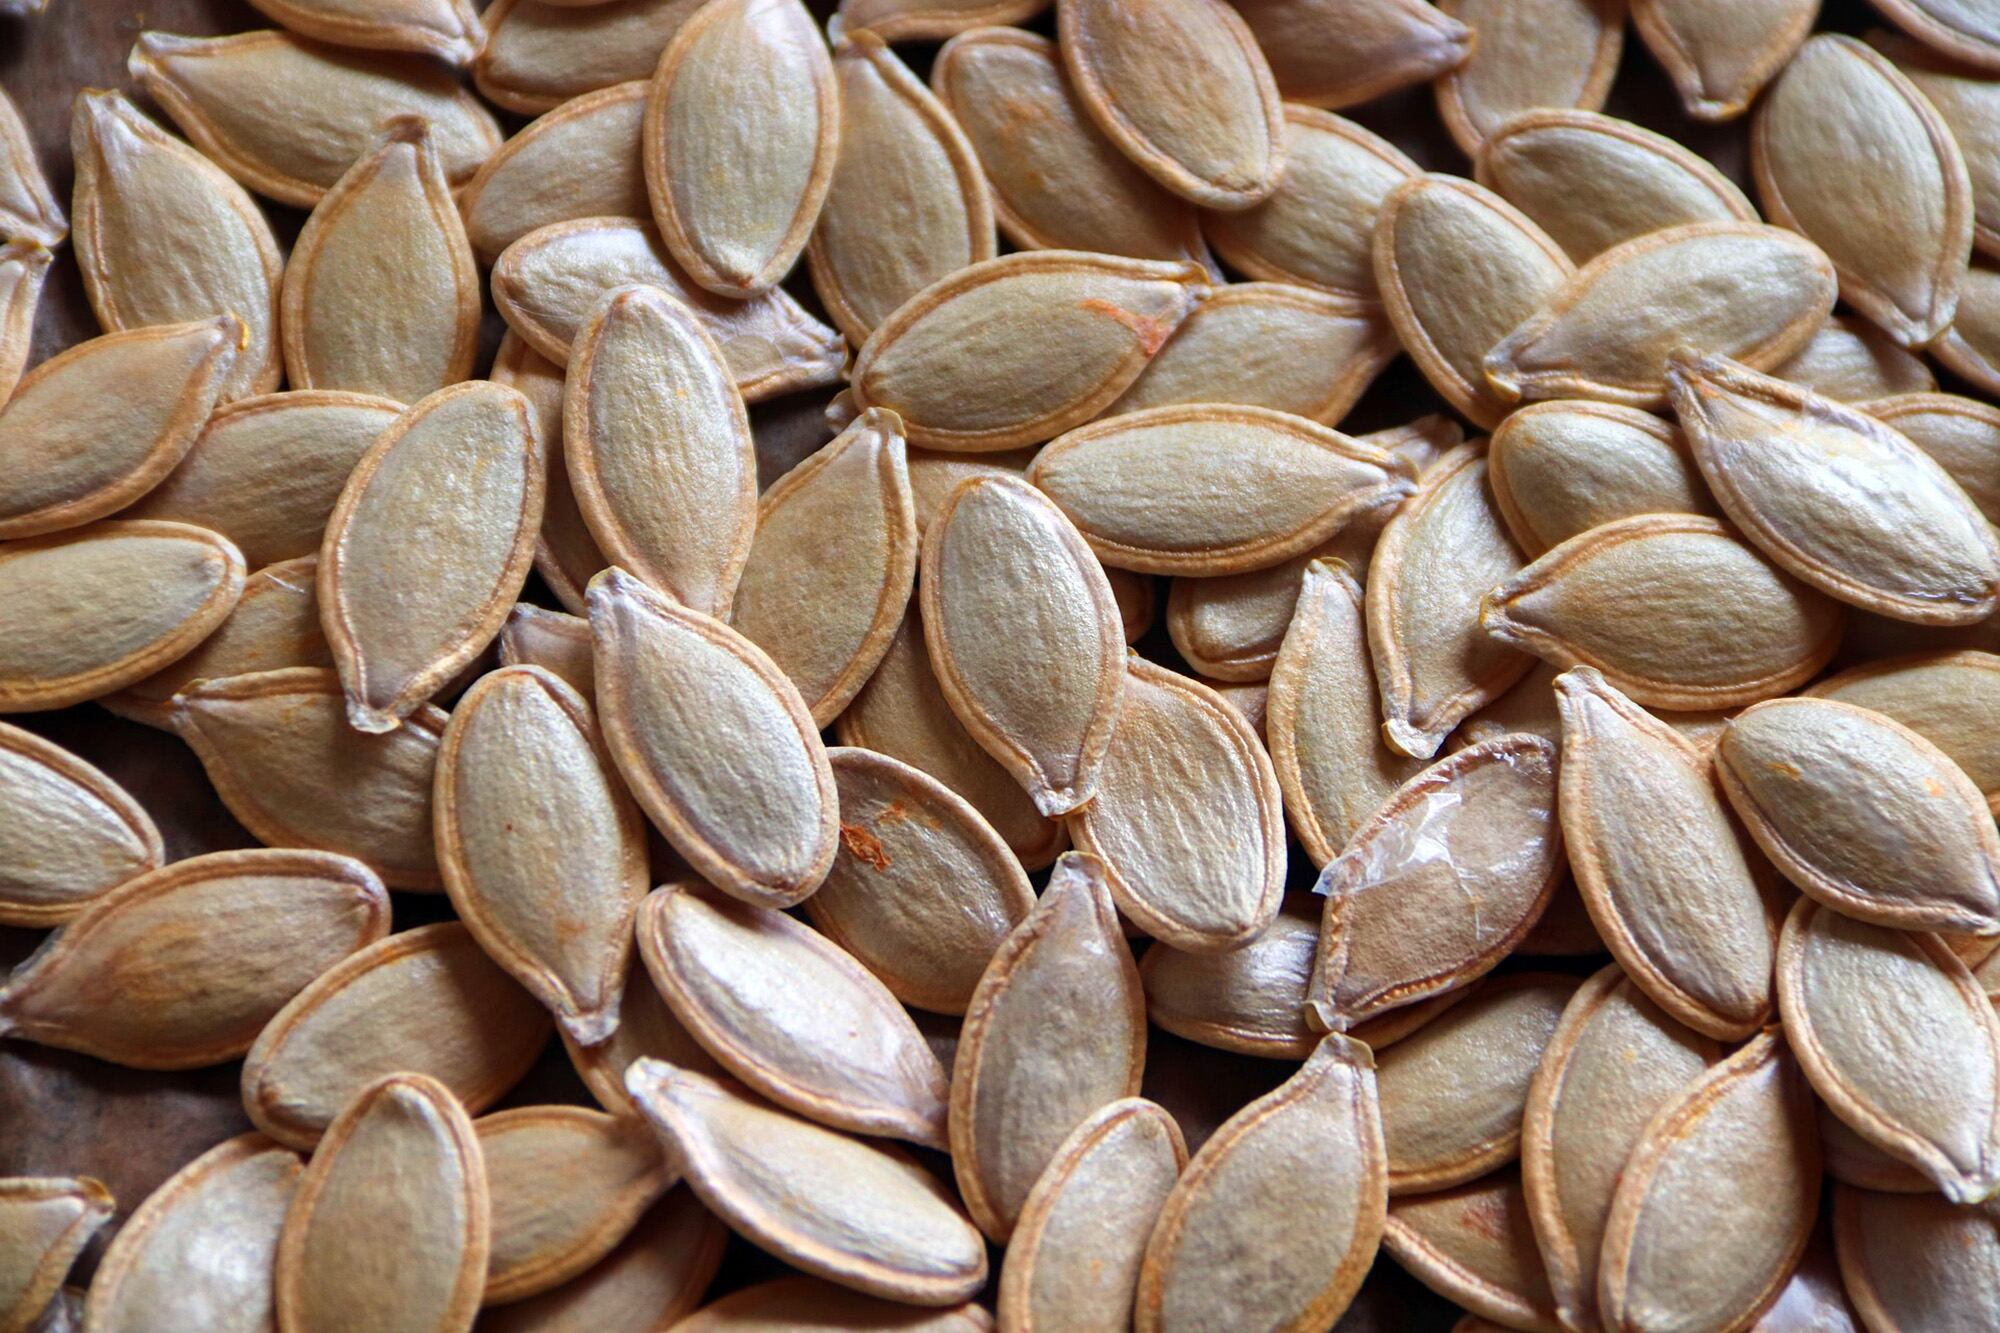 Si se guardan cuando se usa el zapallo, las semillas pueden conservarse en la heladera para convertirse más tarde en un delicioso snack